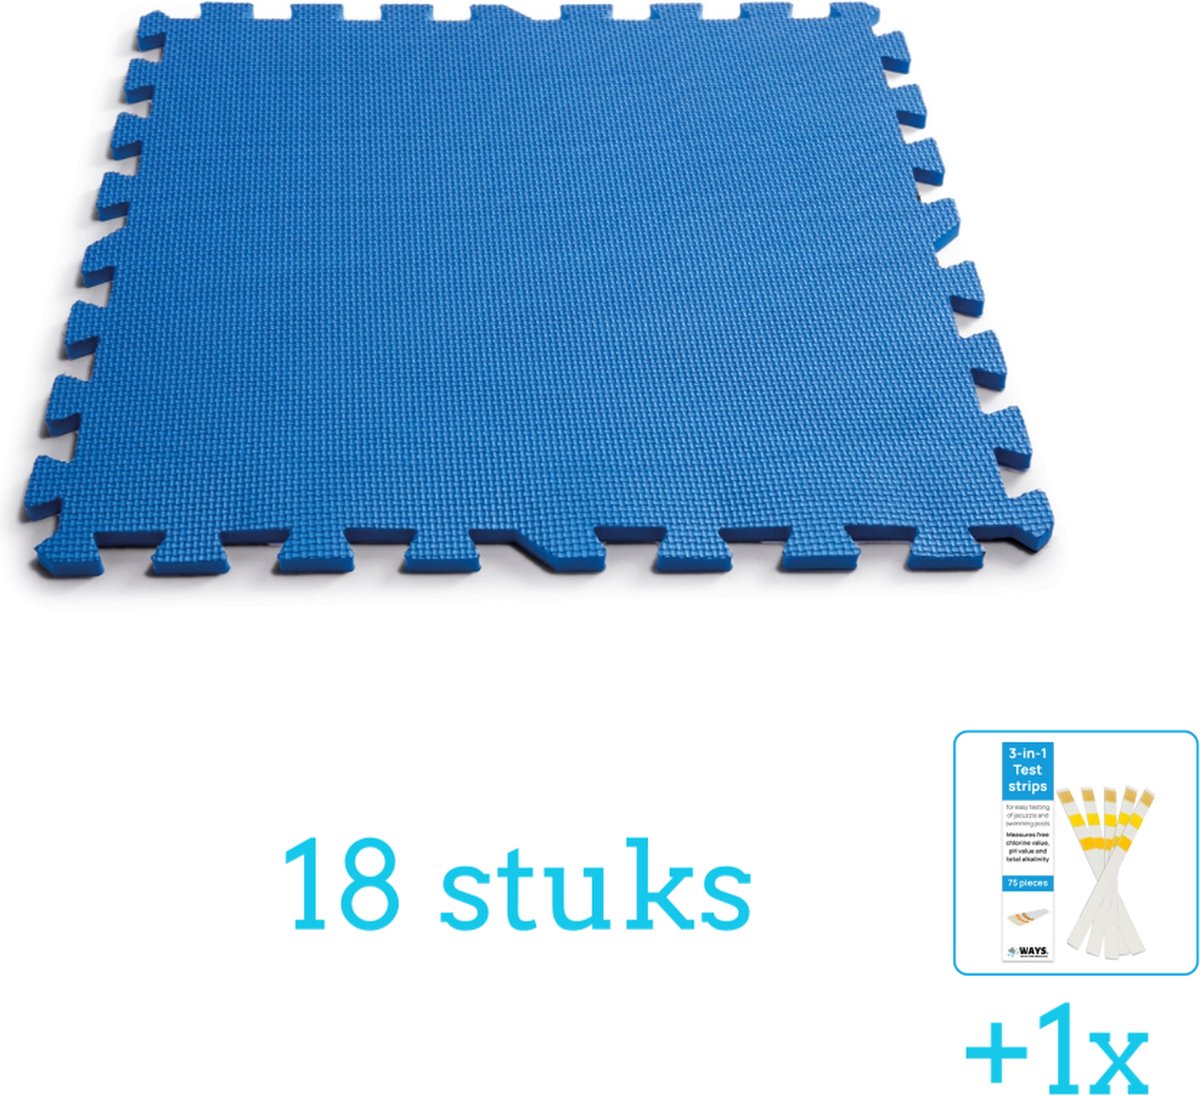 Intex Zwembadtegels - 50x50 cm - (8 stuks per verpakking) - Blauw - 18 stuks - Voordeelverpakking - Inclusief WAYS Testrips (1 stuks)